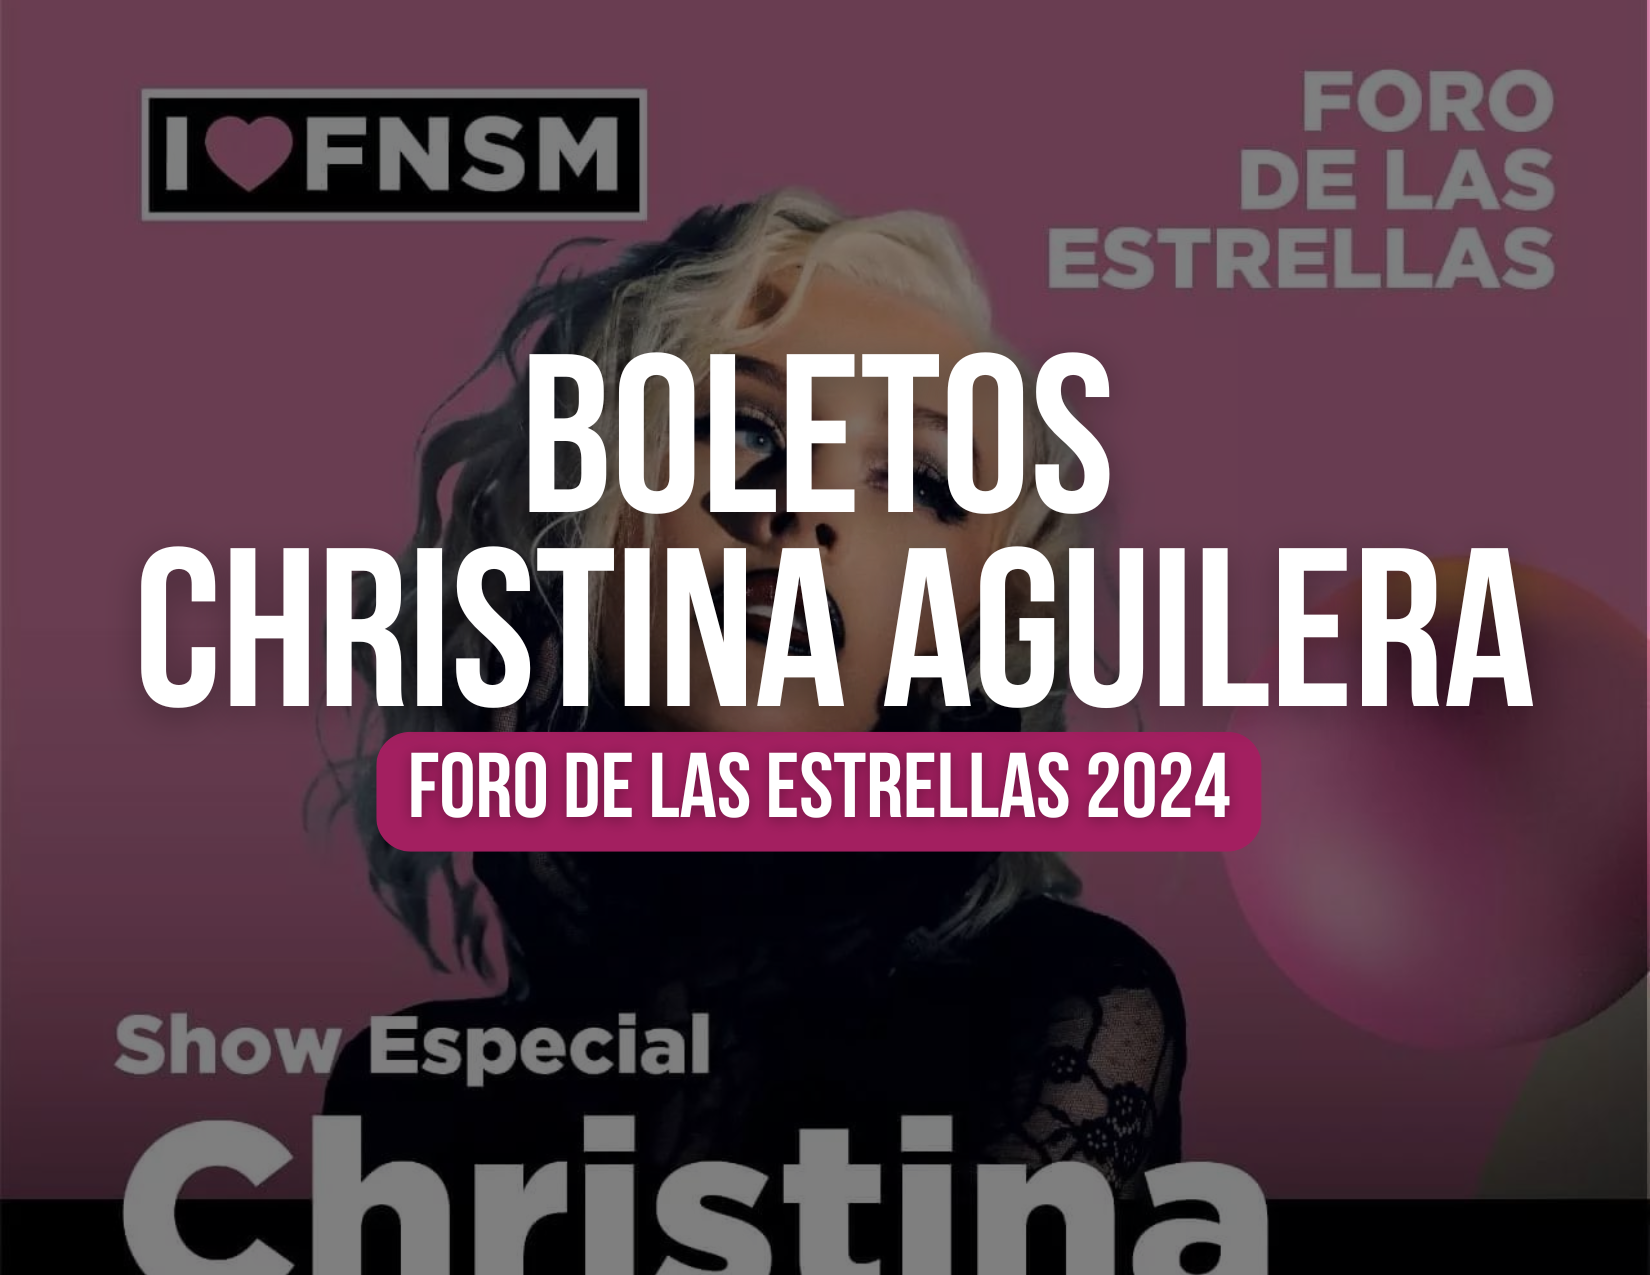 Boletos Christina Aguilera Foro de las Estrellas 2024